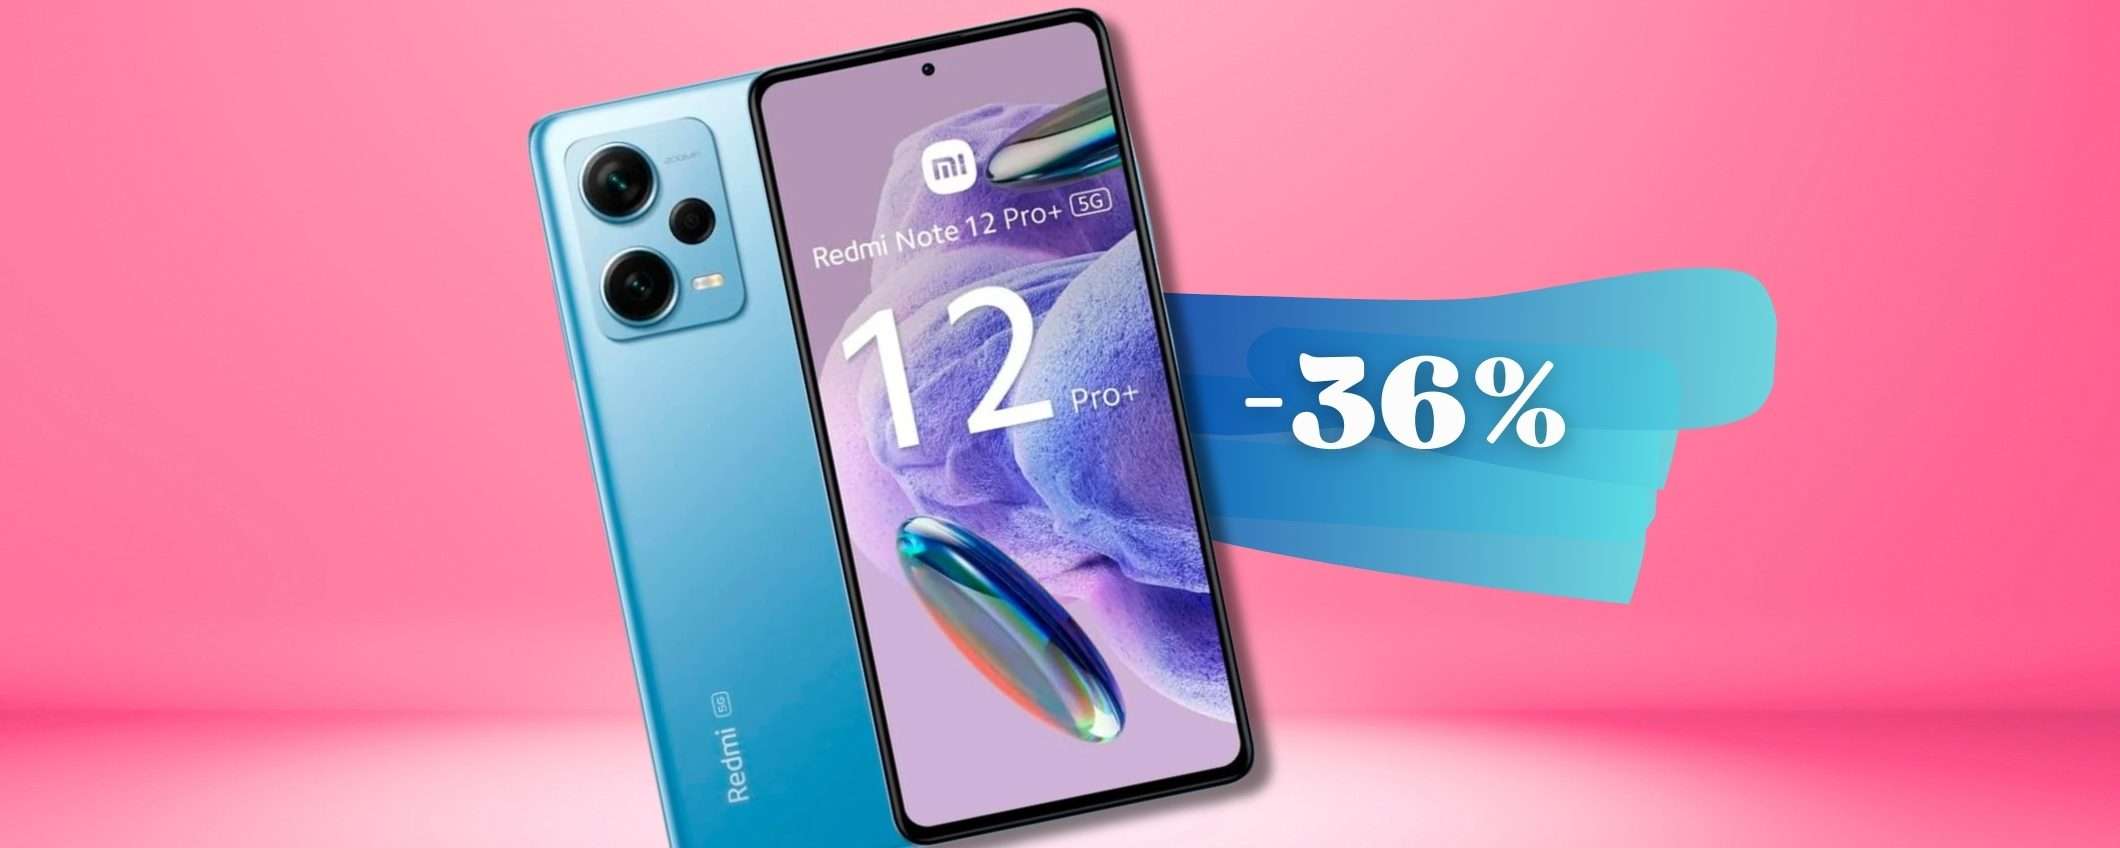 Xiaomi Note 12 PRO+ smartphone MAGICO sotto i 300€, promozione TOP